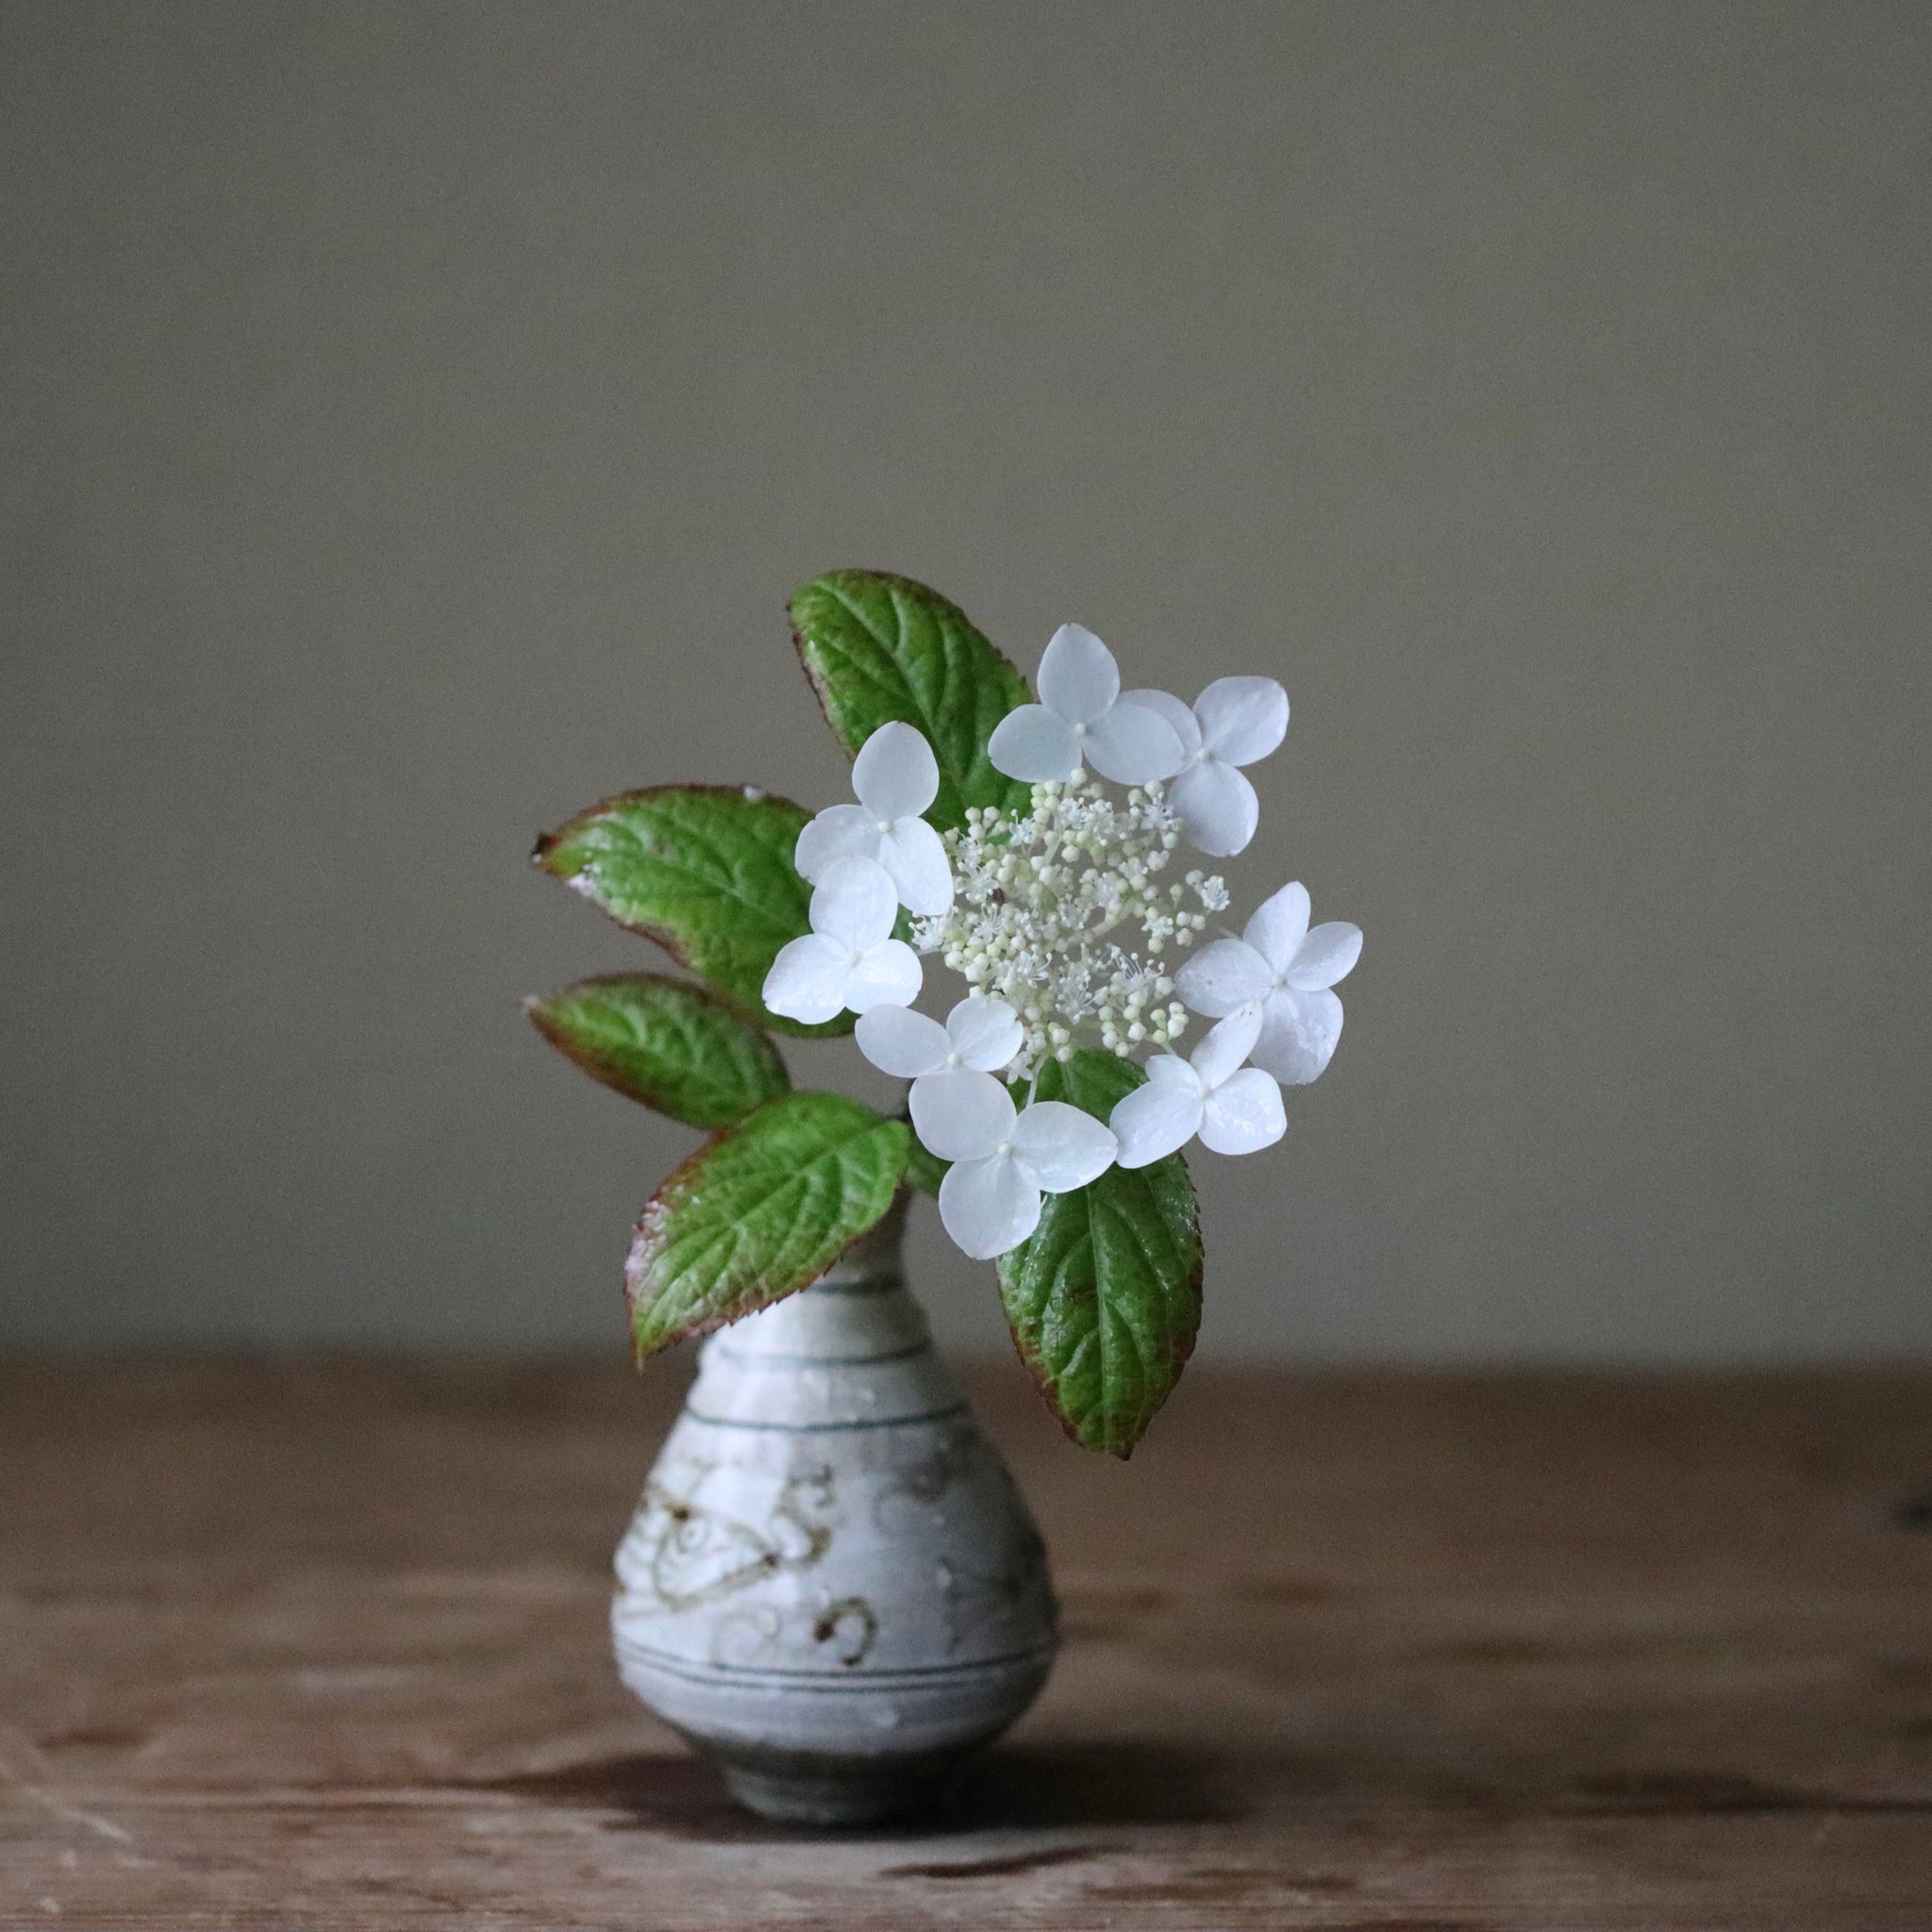 Hydrangea serrata ‘Kurenai’ (Mountain hydrangea ‘Kurenai,’ yama ajisai ‘Kurenai’)